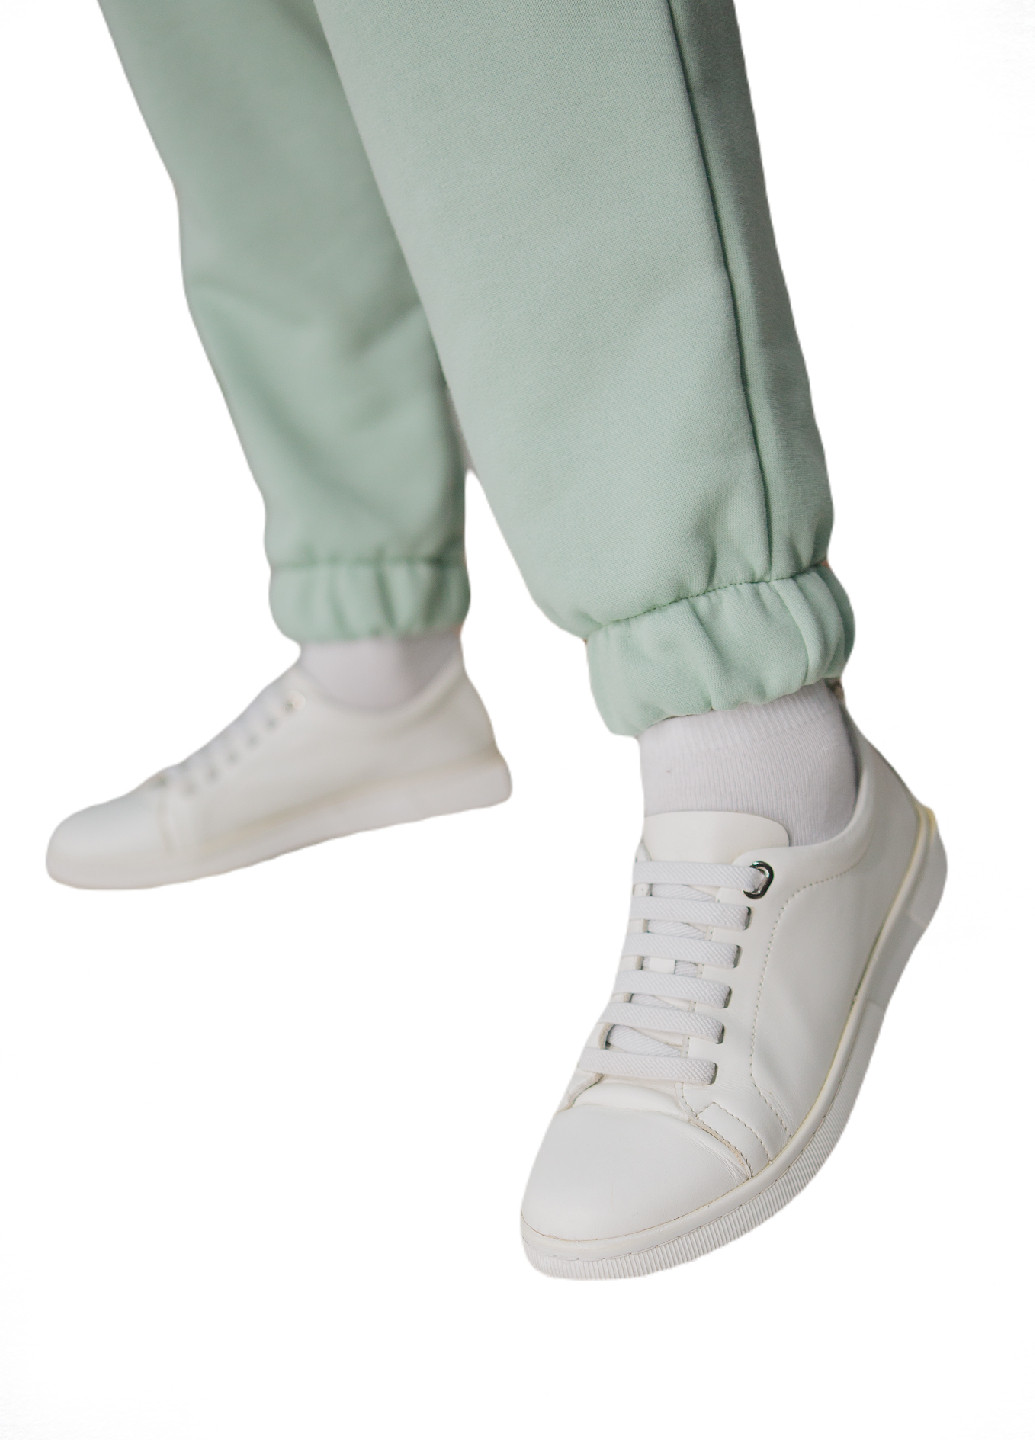 Спортивные штаны-джоггеры для беременных c карманами HN (243448698)